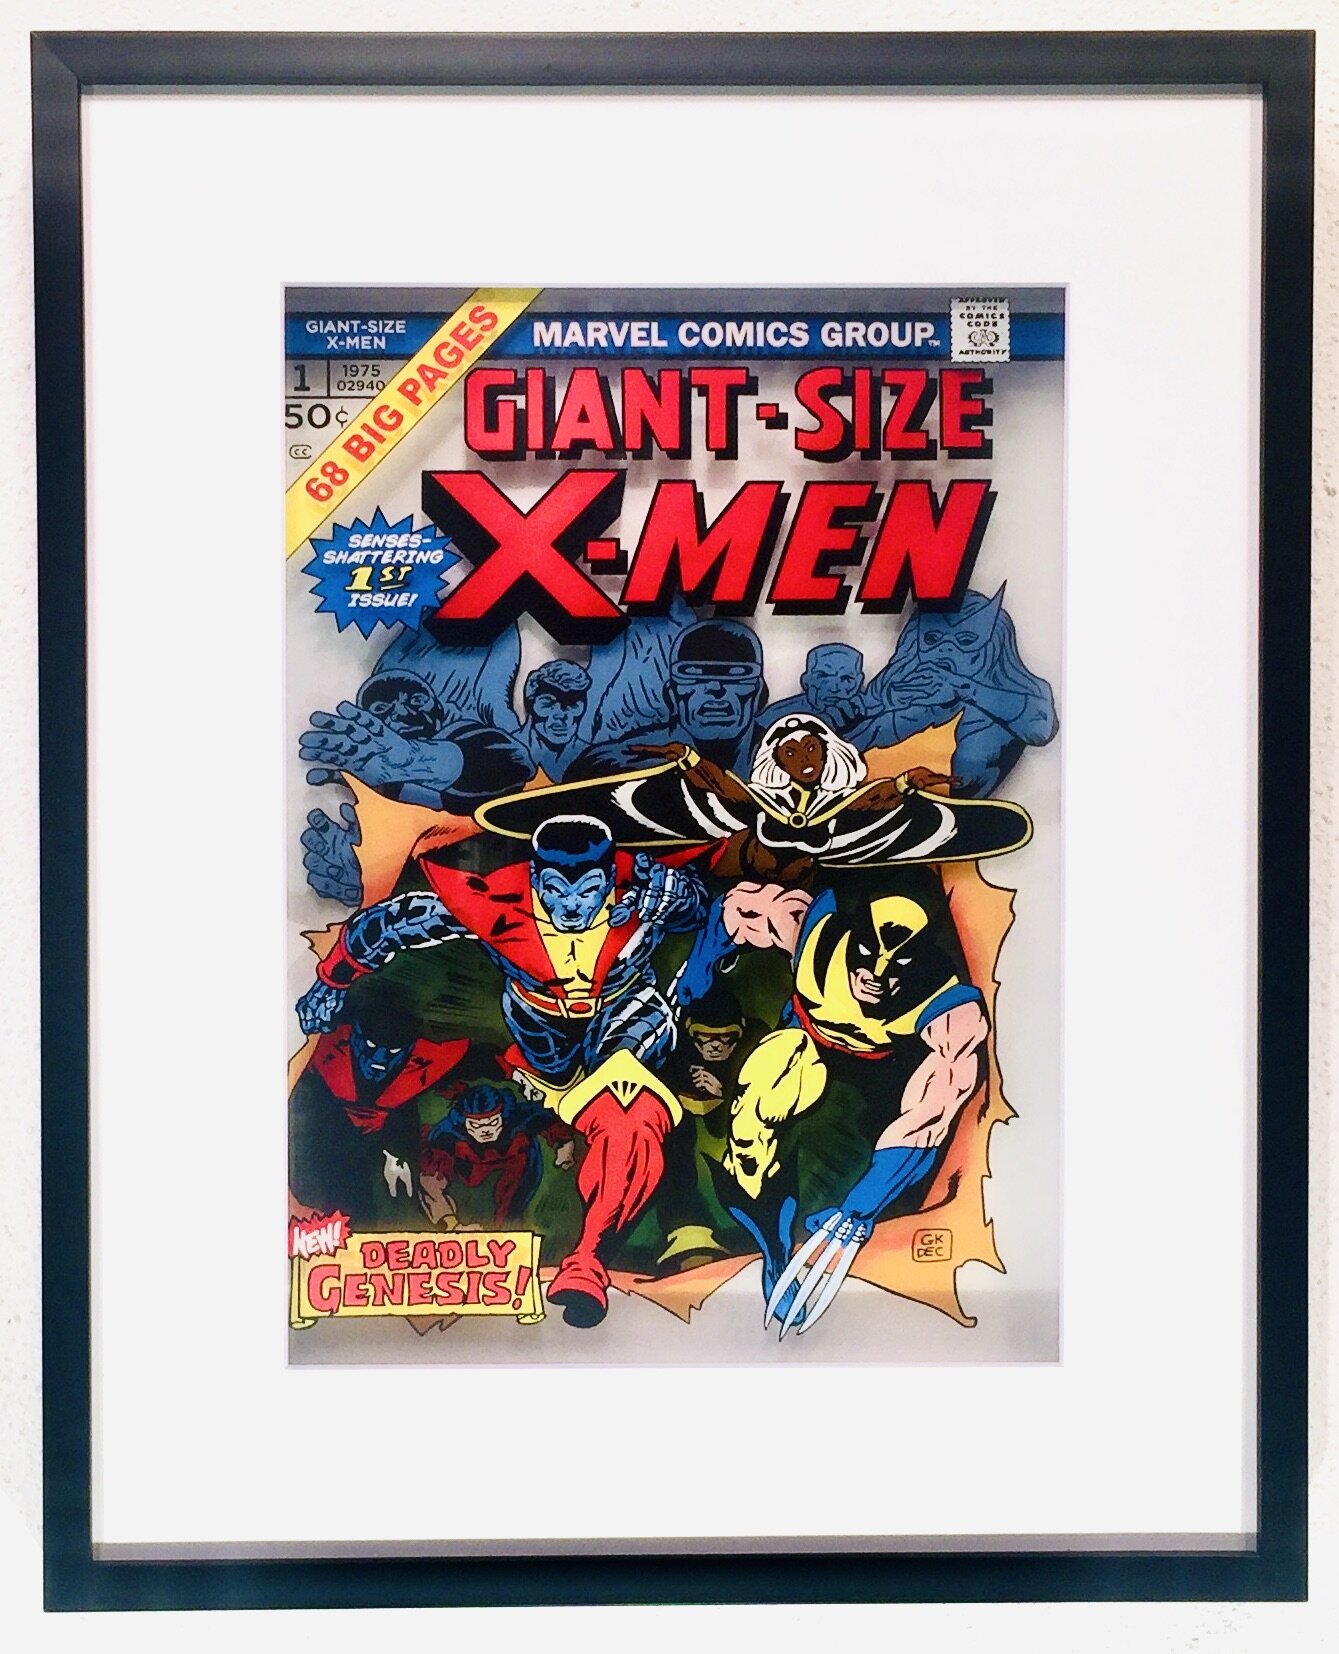 Giant Size X-Men Vol. 1, N0. 1 (1975)